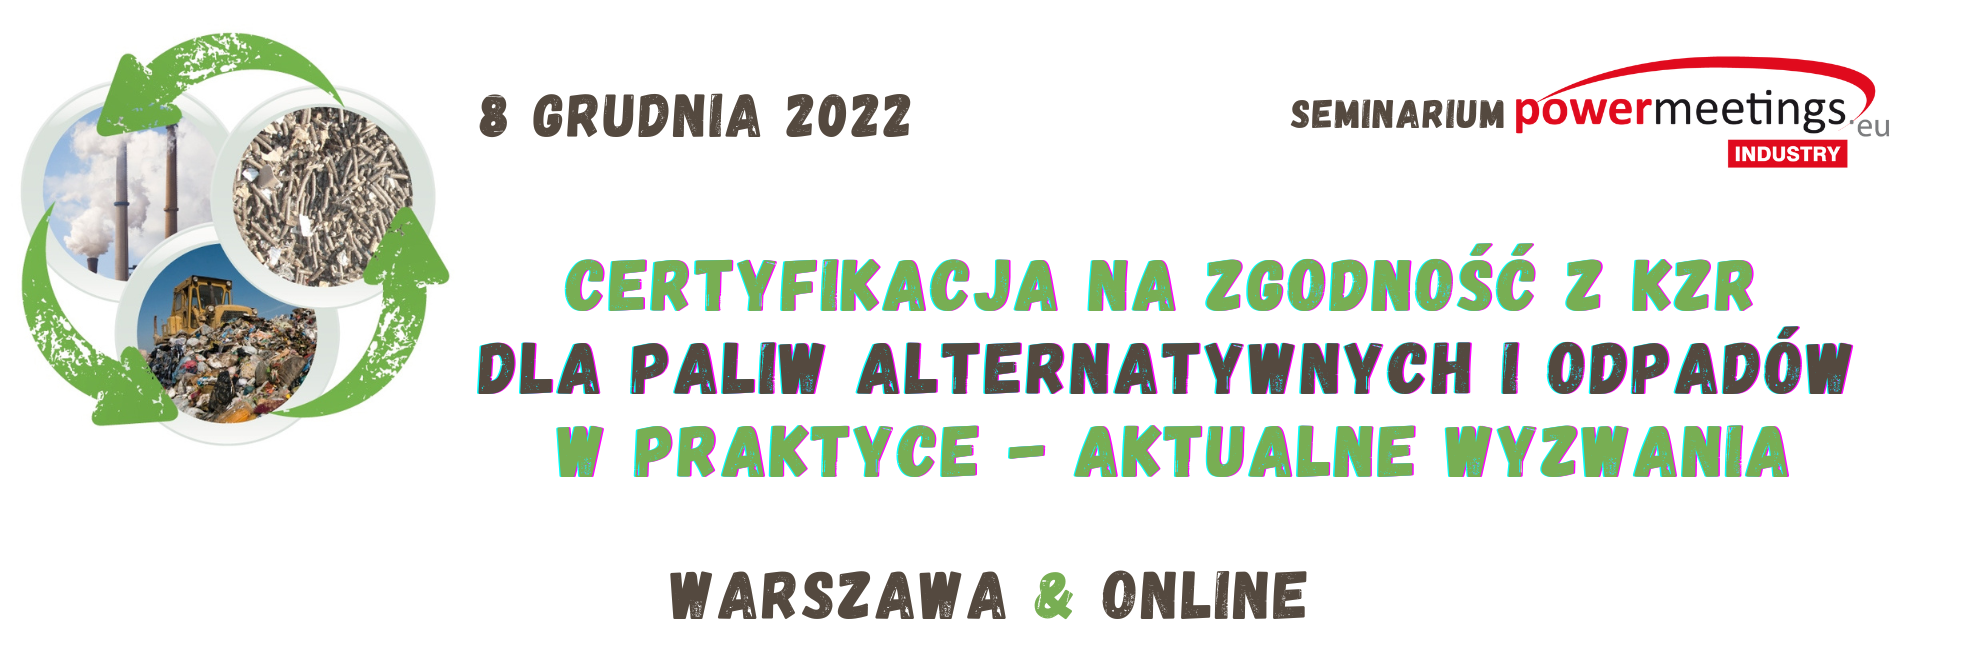 Certyfikacja na zgodność z KZR dla paliw alternatywnych oraz odpadów grudzień 2022